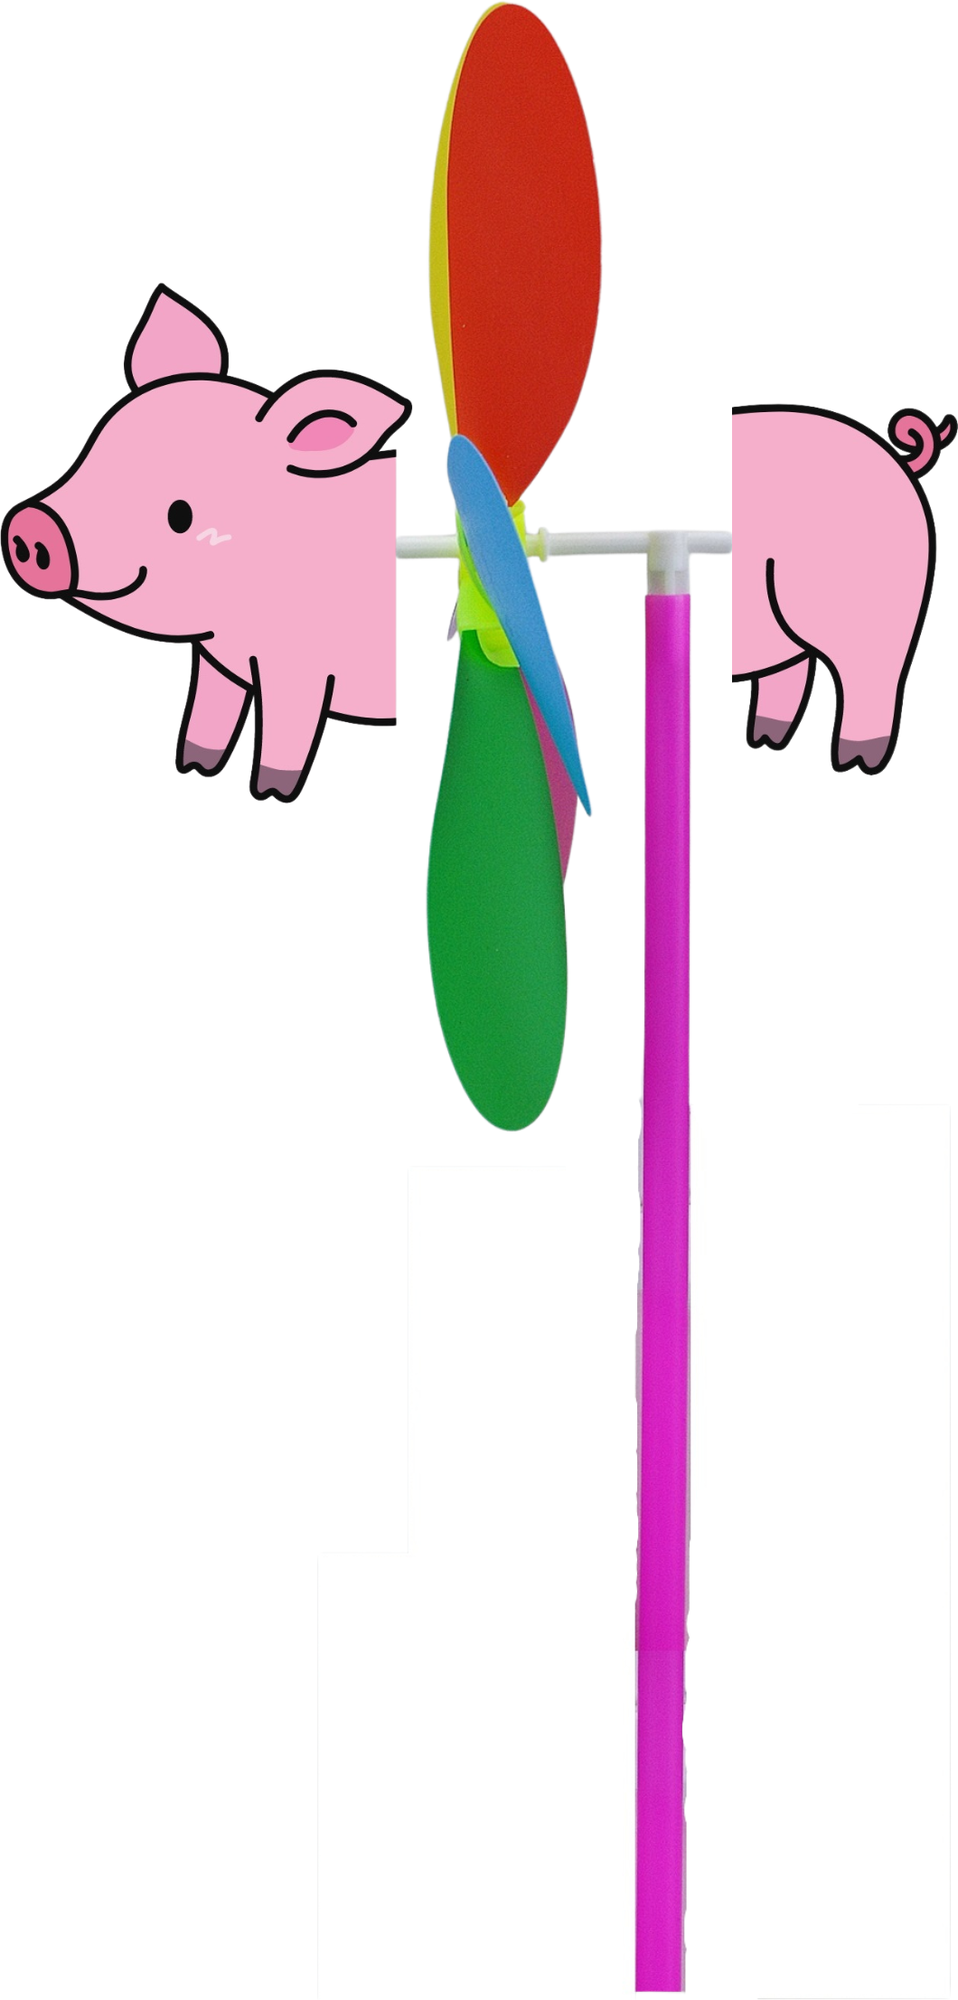 Ветерок цветочек, ветряная мельница, игрушка - вертушка для детей с фигуркой животного свинка, диаметр 23.5 см.